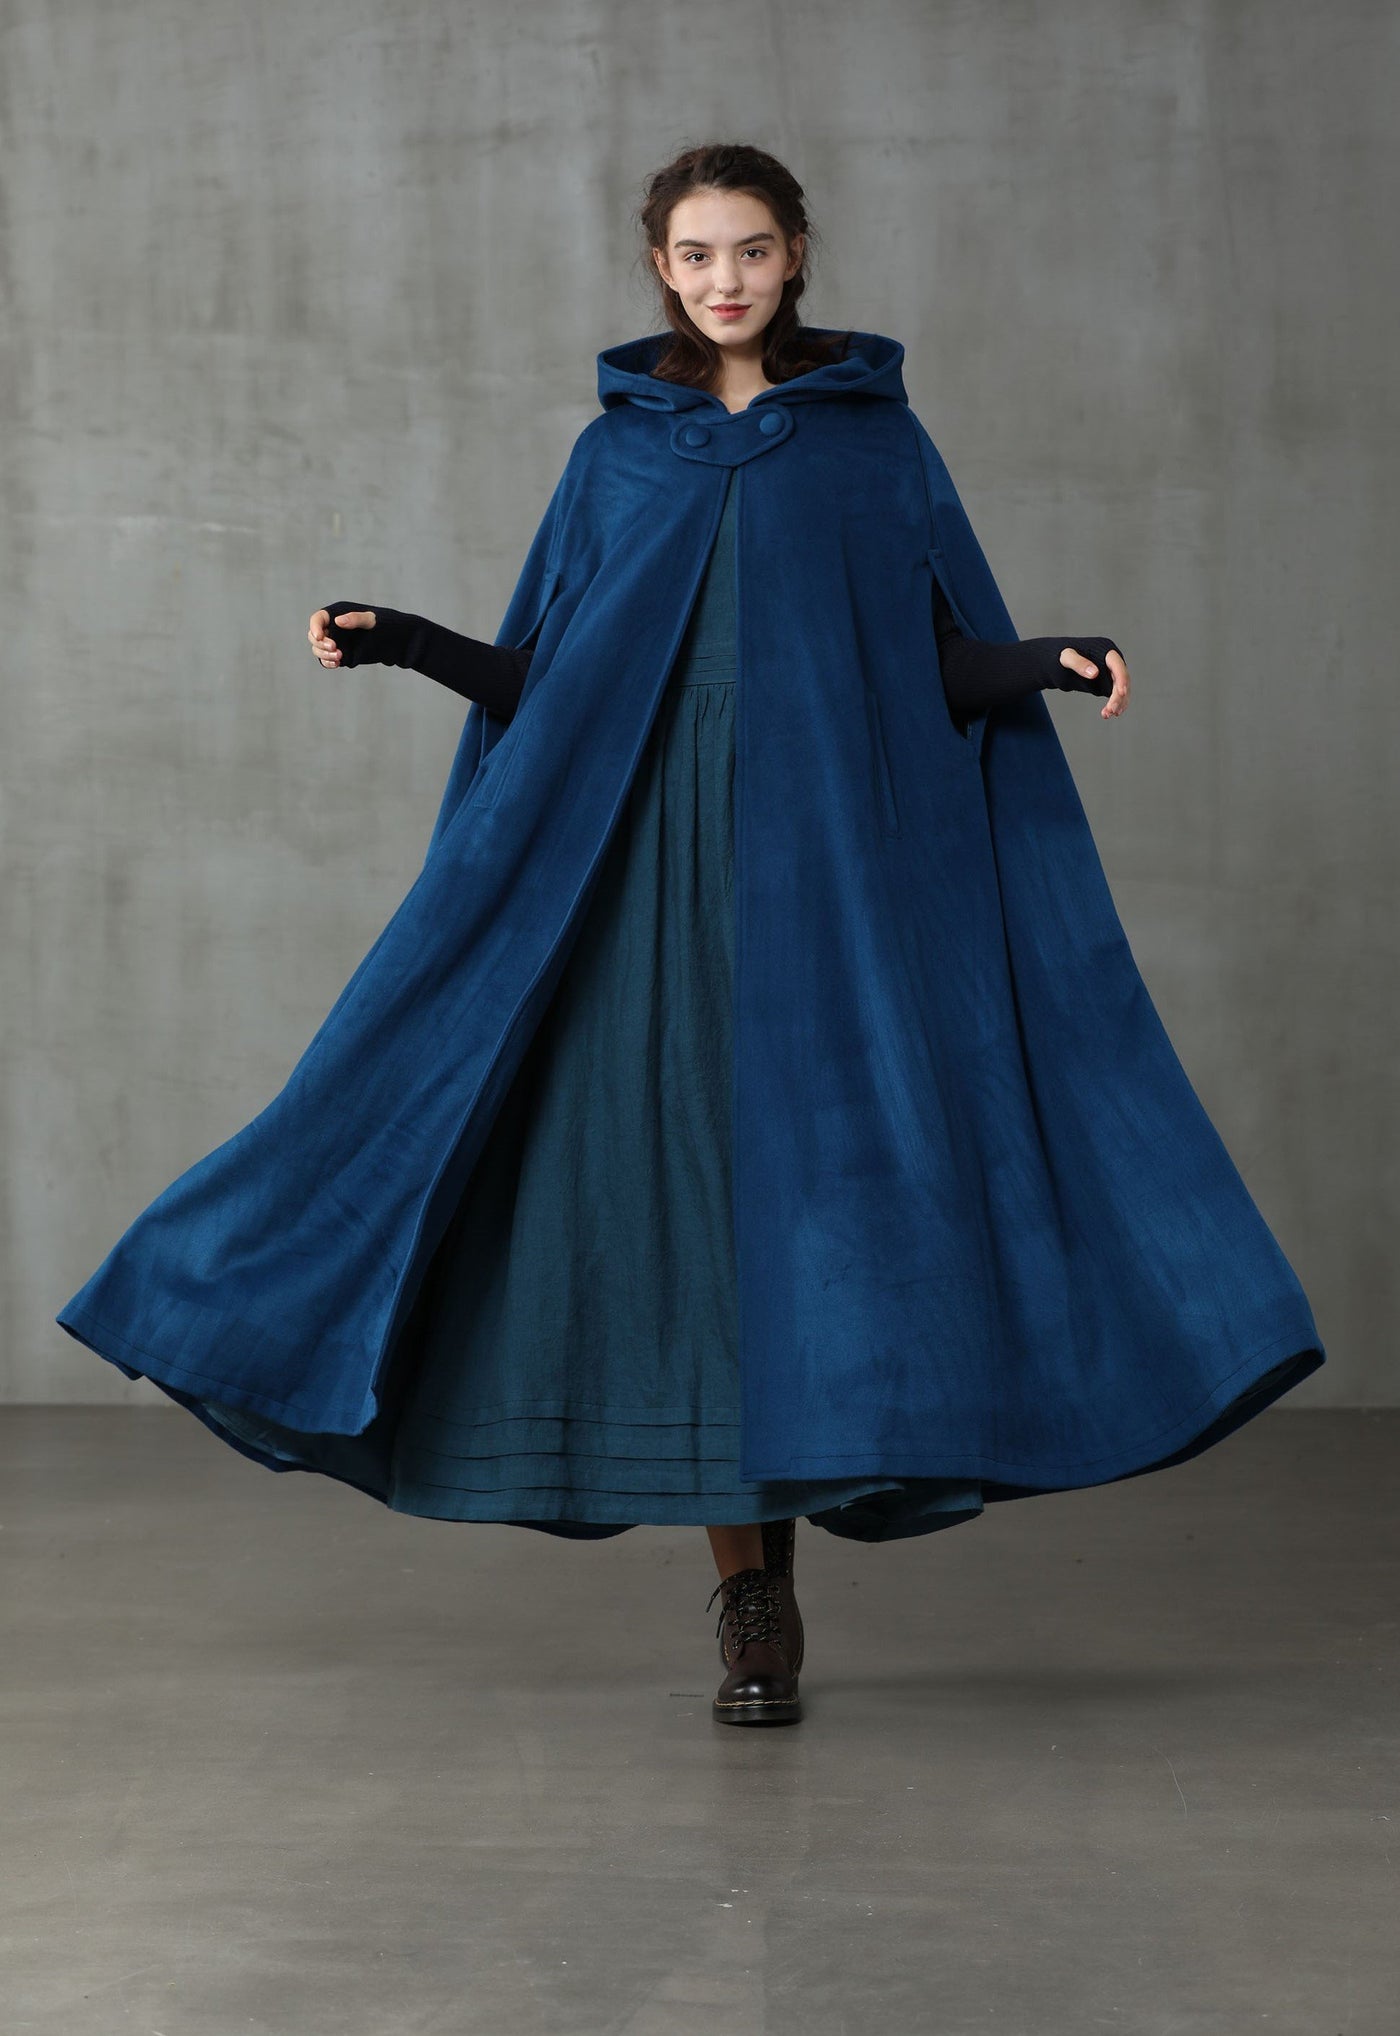 Outlander 2020 | 100% hooded coat